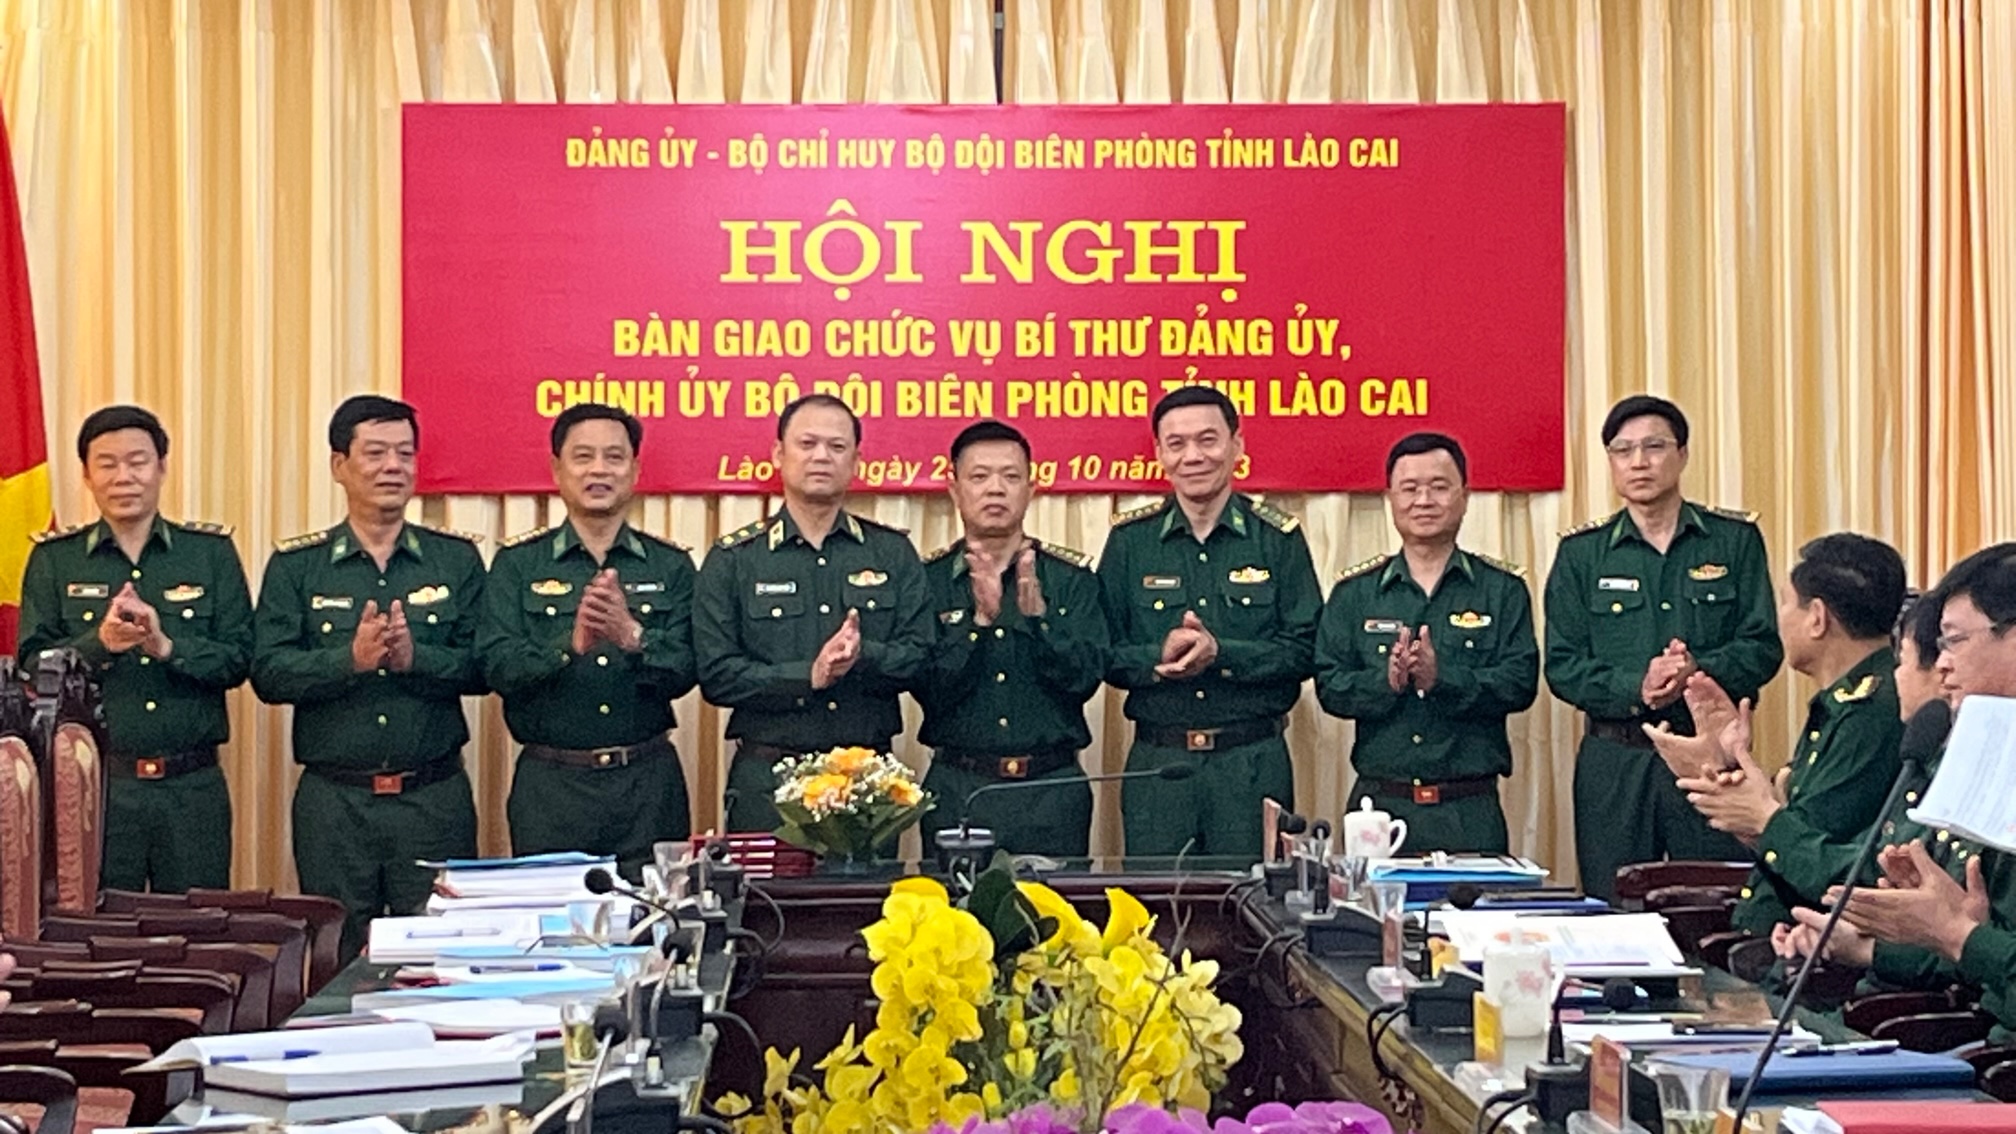 Trung tướng Nguyễn Anh Tuấn, Chính ủy Bộ đội Biên phòng chụp ảnh lưu niệm cùng tập thể lãnh đạo Bộ Chỉ huy Bộ đội Biên phòng tỉnh Lào Cai. ảnh 4